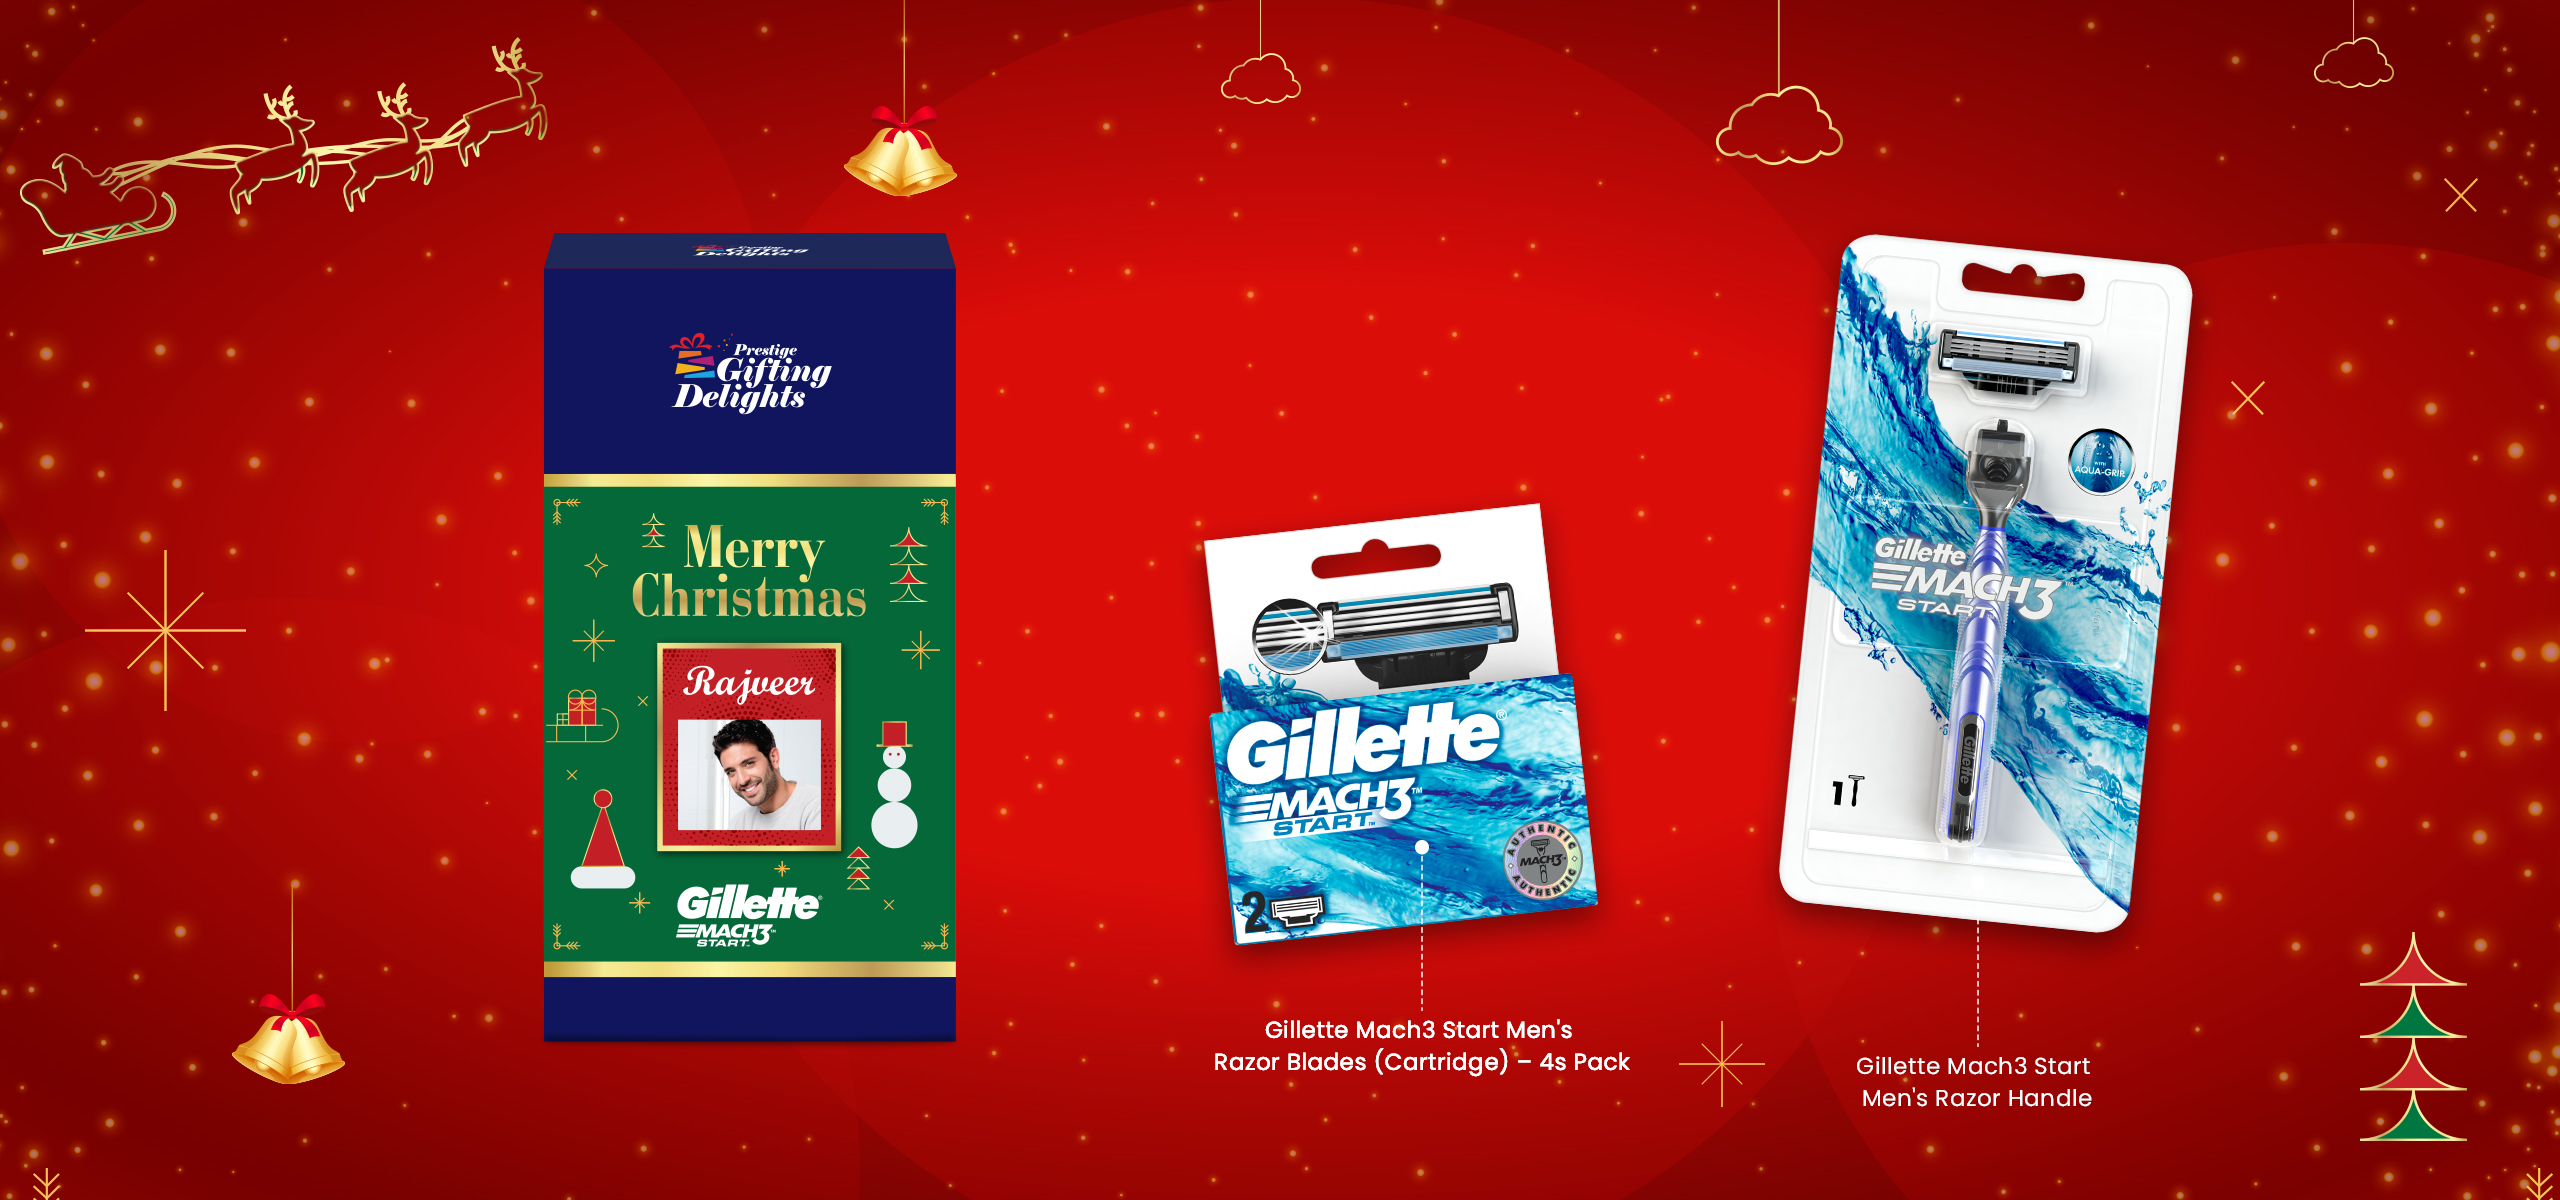 Gillette Mach3 Start Razor Shaving Christmas Gift Pack for Men with 4 Cartridge